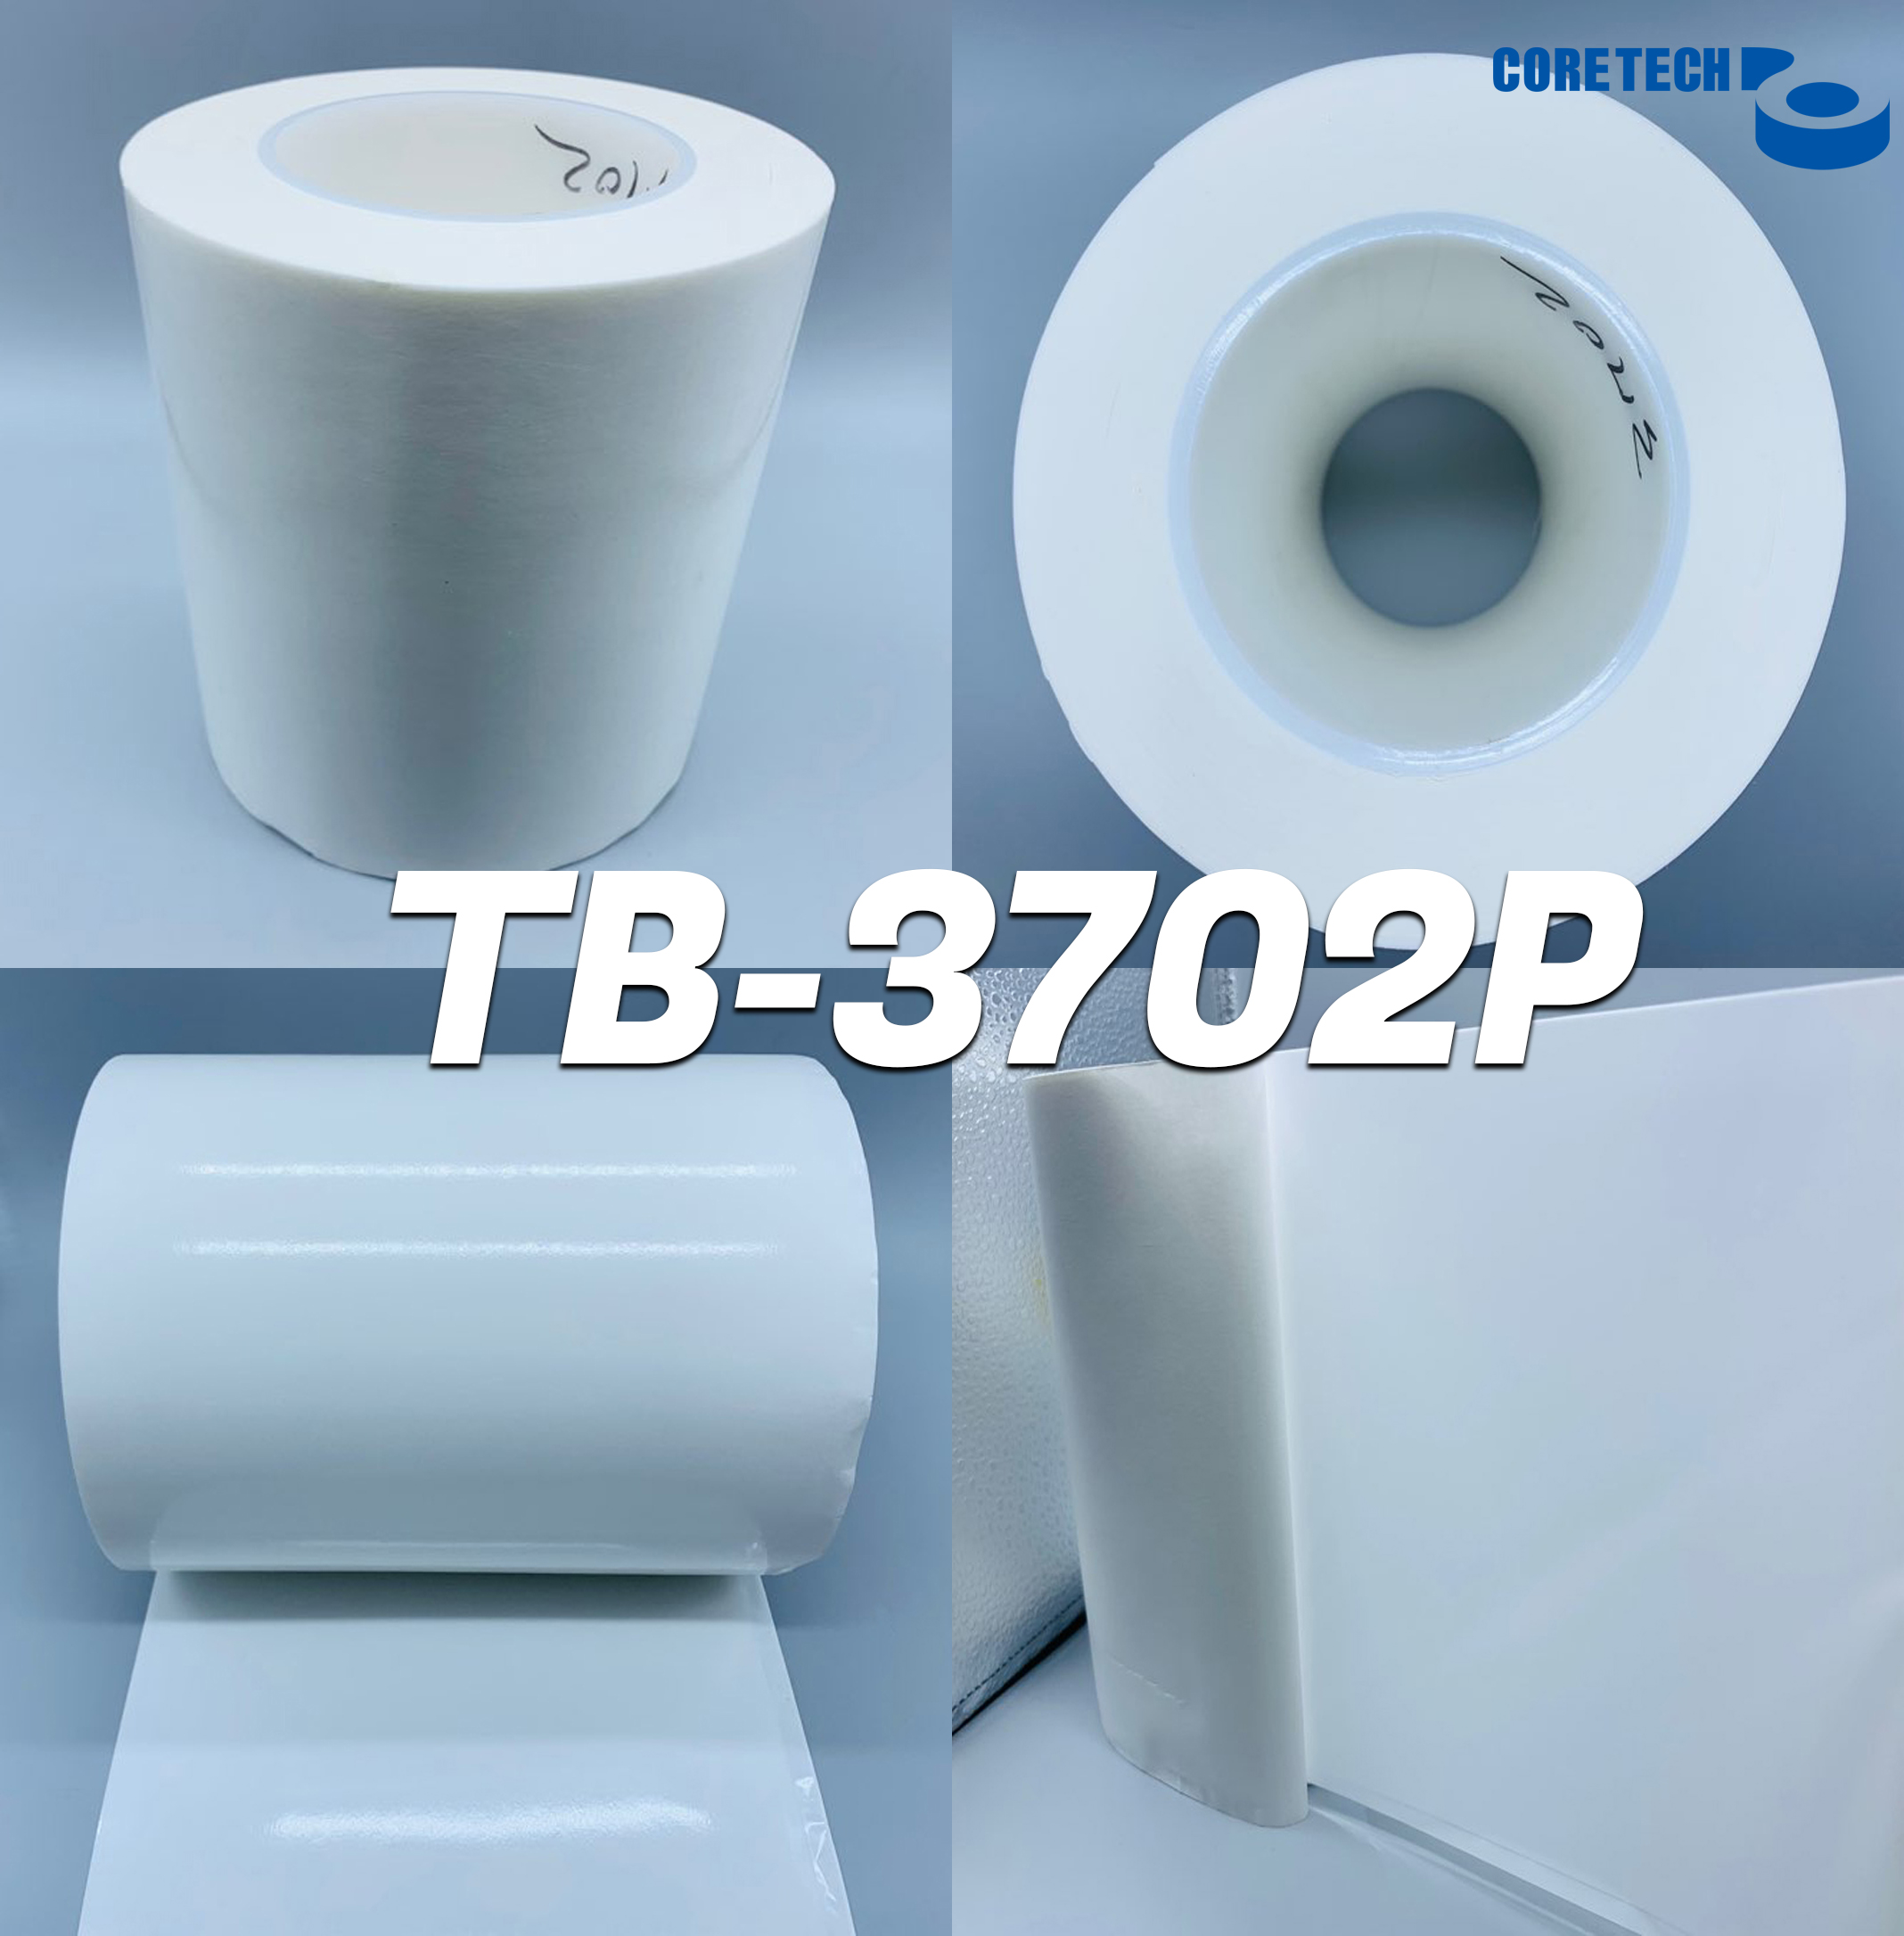 TB-3702P 열전도방열양면테이프